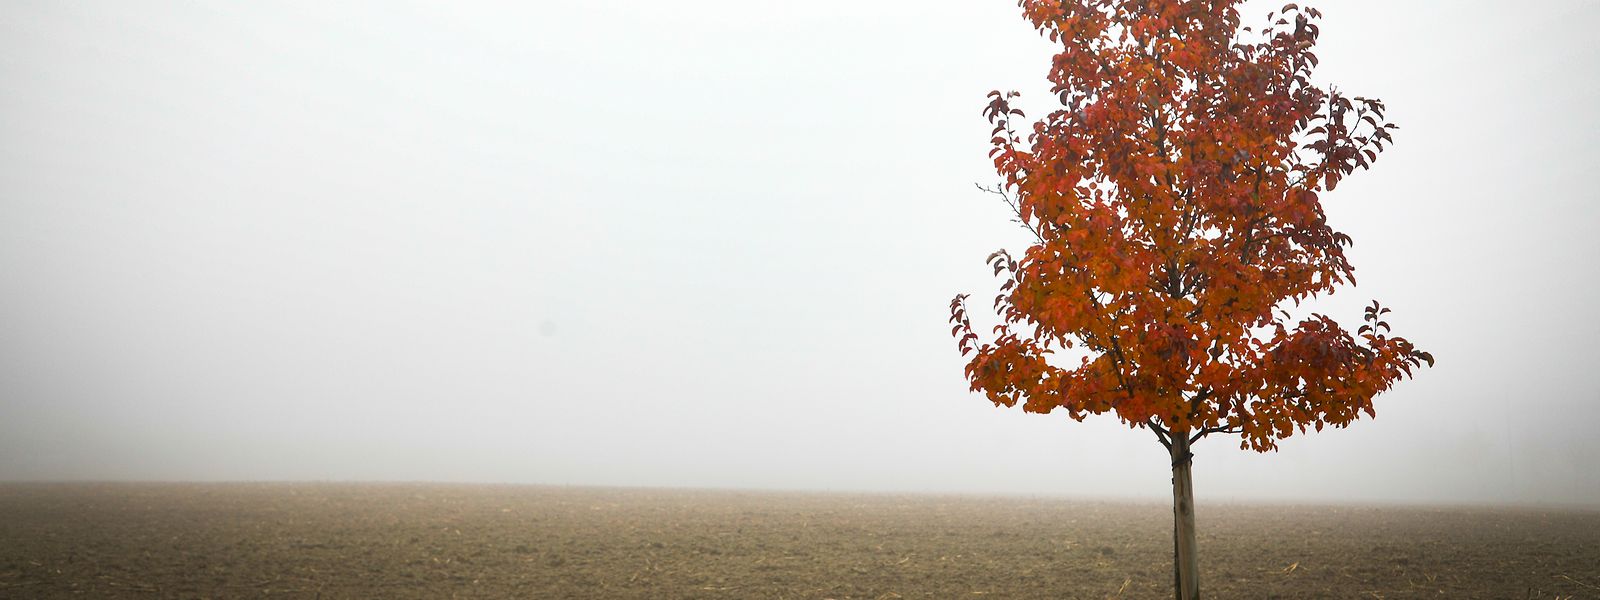 Nebel war im Herbst ein Thema und bleibt es auch weiterhin.